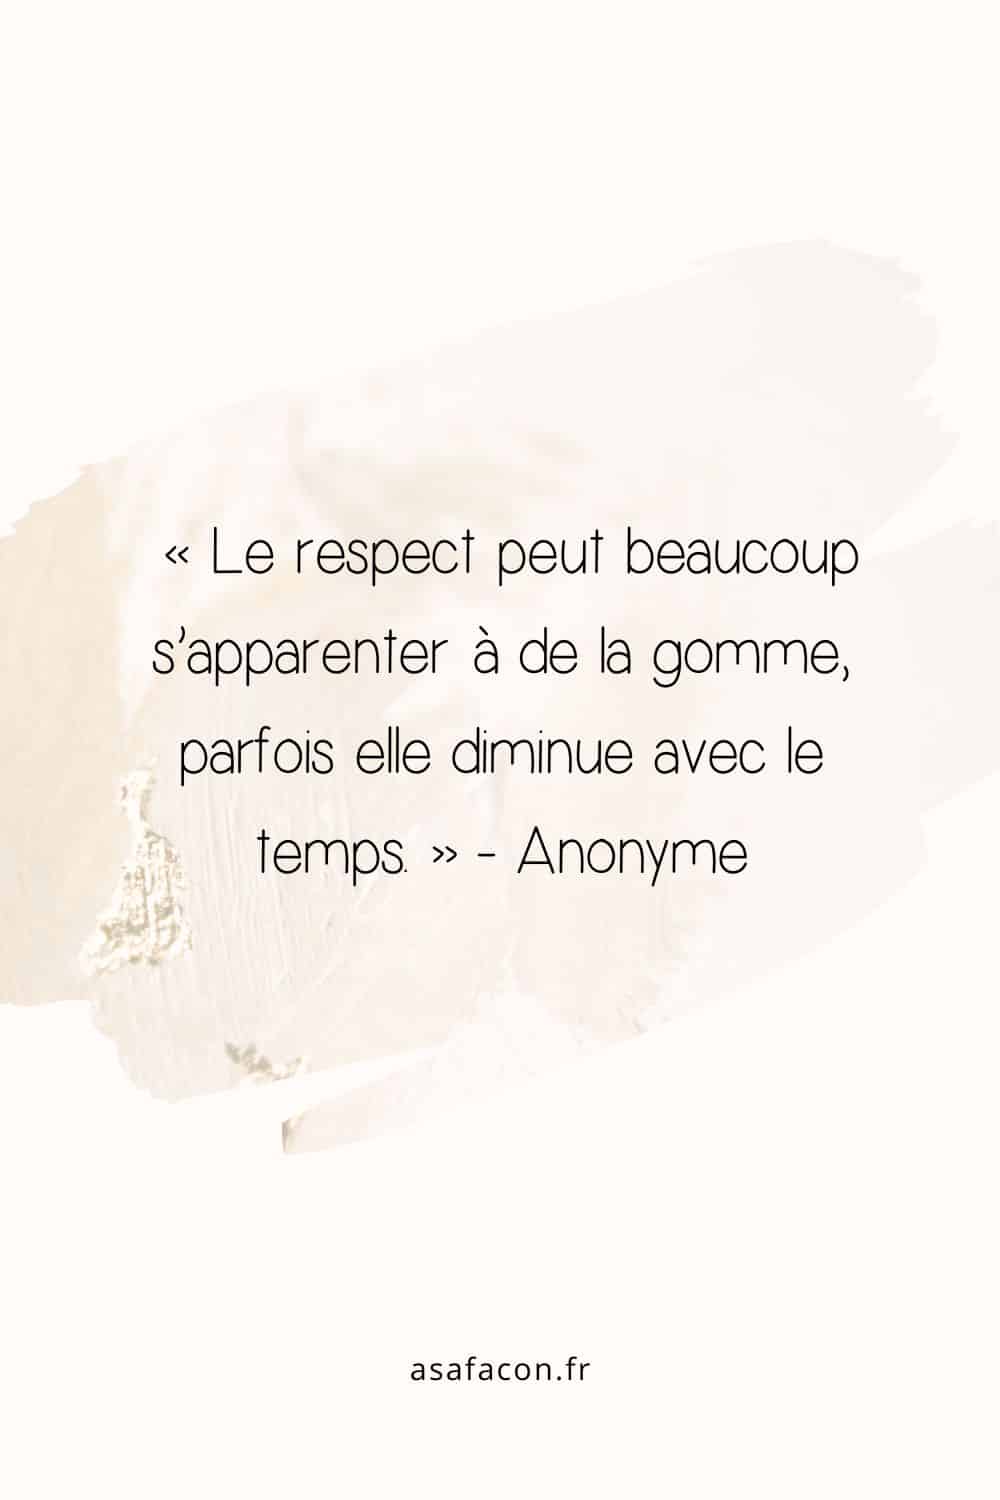 « Le respect peut beaucoup s’apparenter à de la gomme, parfois elle diminue avec le temps. » - Anonyme